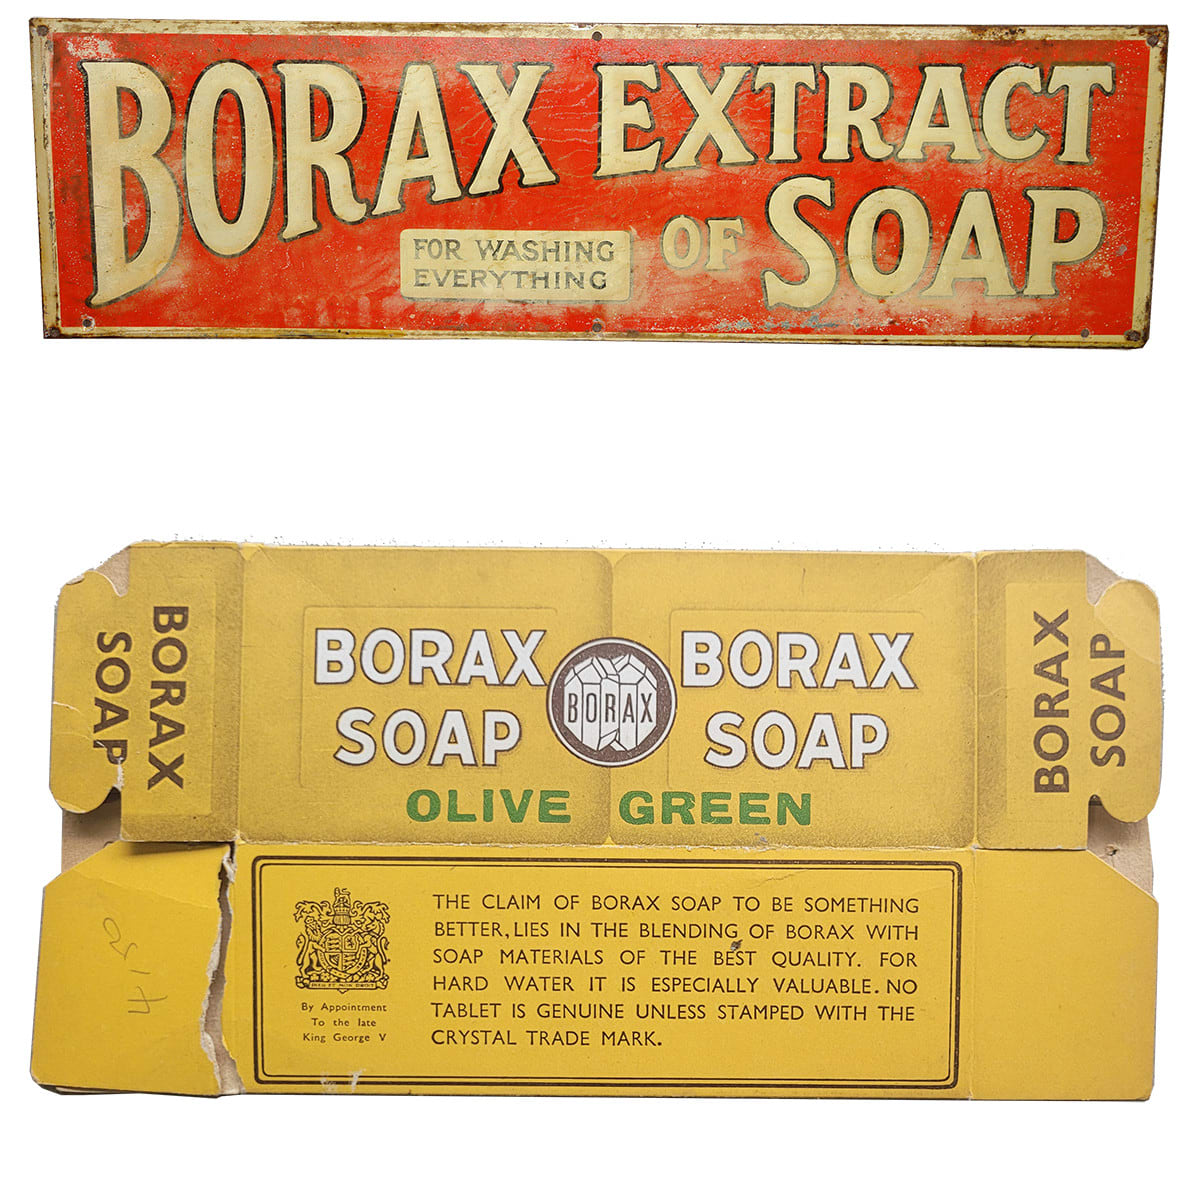 Tin Sign & Cardboard box. Both for Borax Soap.